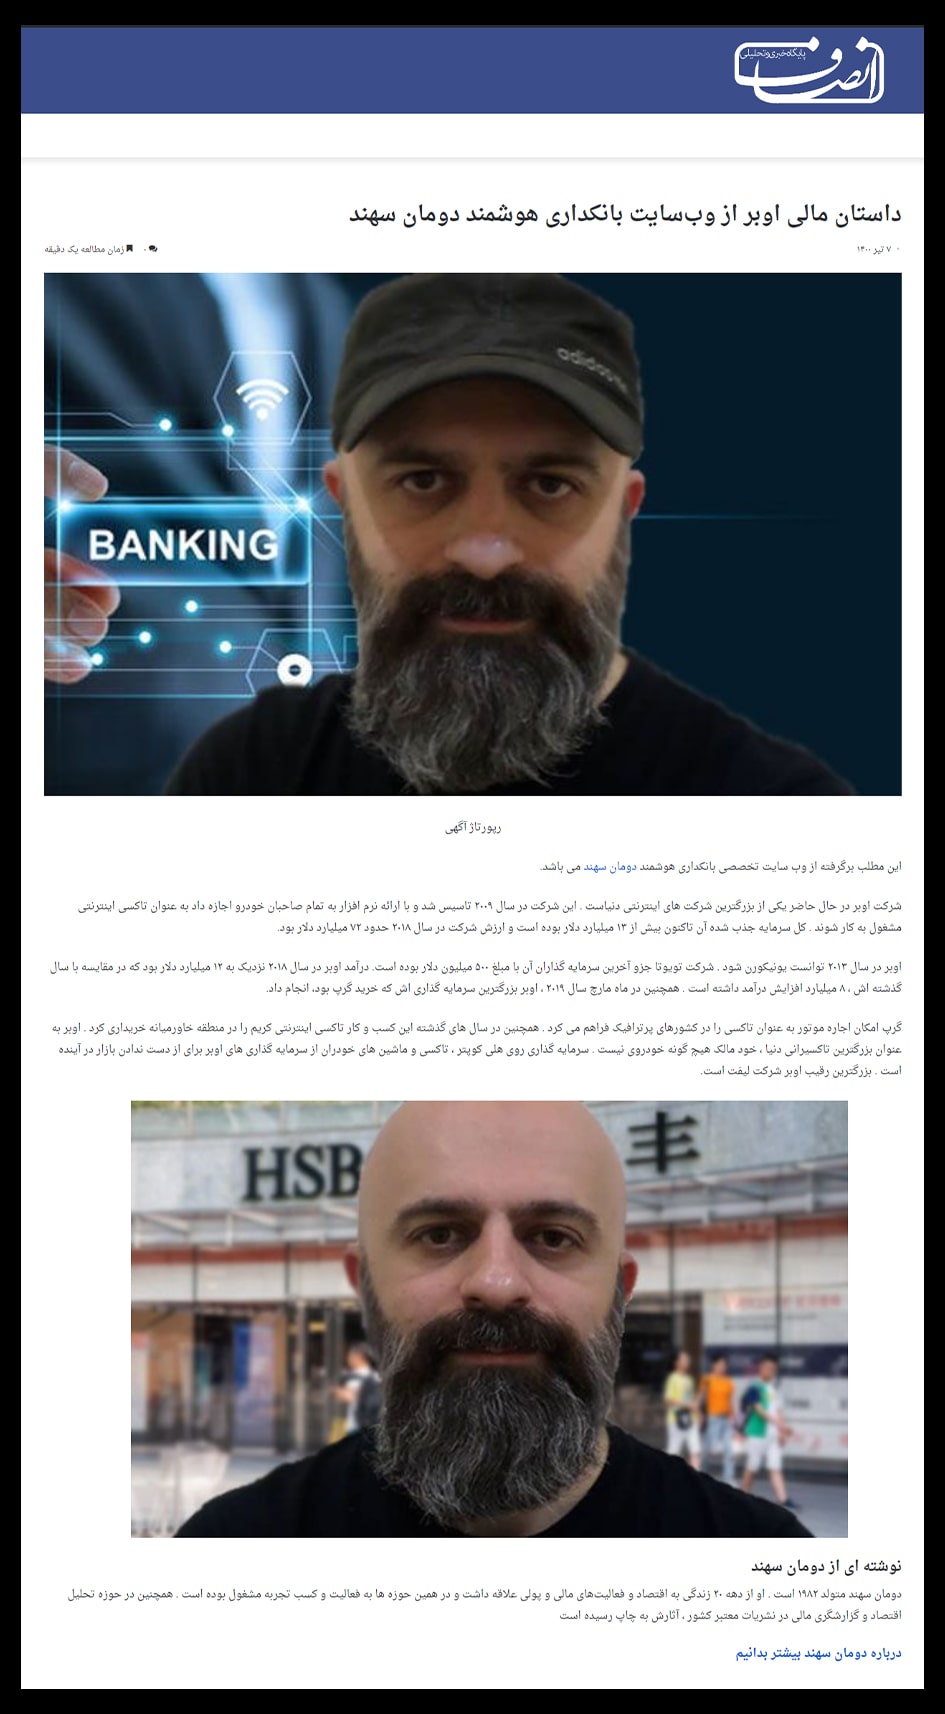 داستان مالی اوبر از وب سایت بانکداری هوشمند دومان سهند